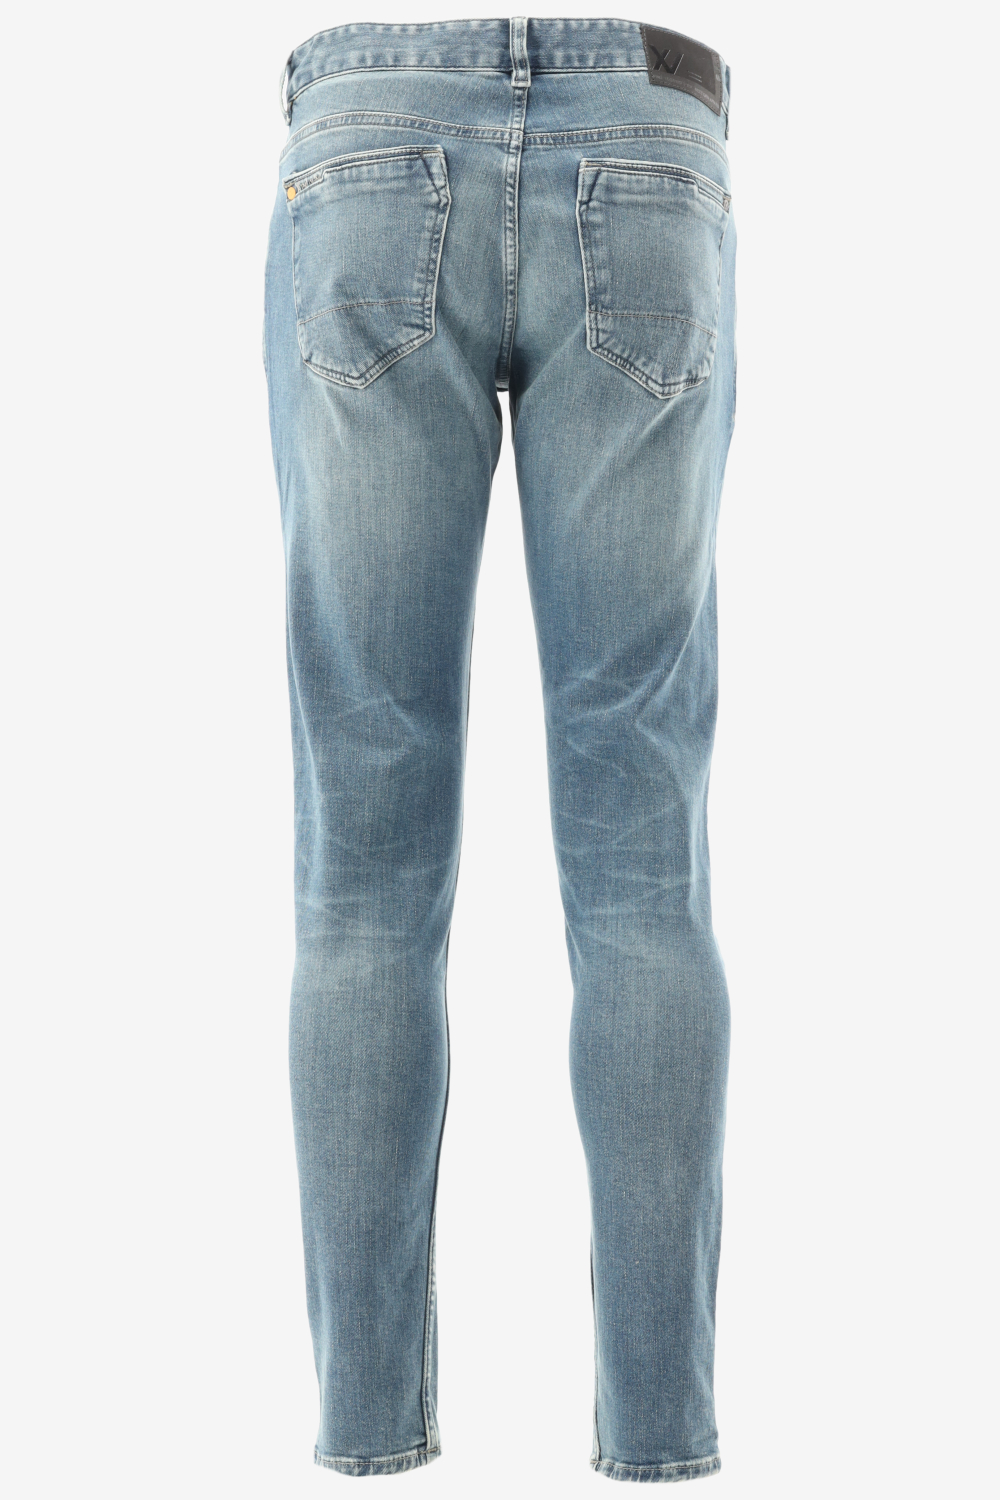 Herenkleding Jeans Pme Legend - VERZENDING! Webshop Fit - XV | Outlet GRATIS Fashion Bergmans Slim